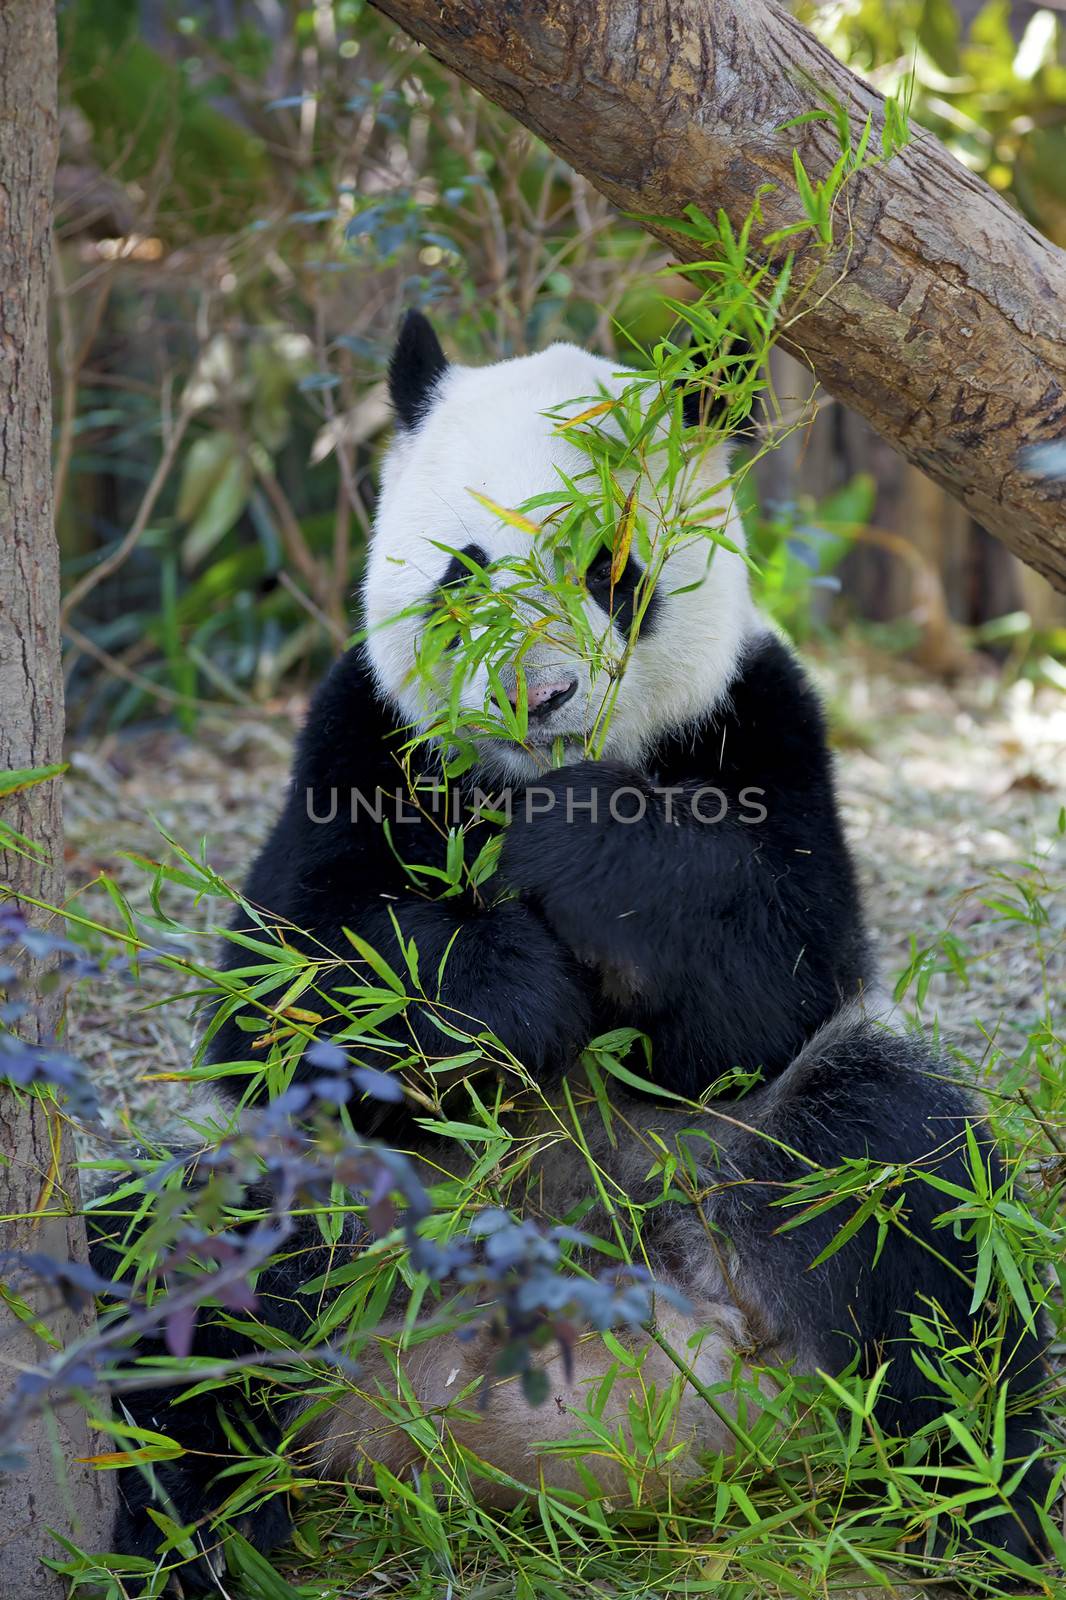 Giant Panda by kjorgen